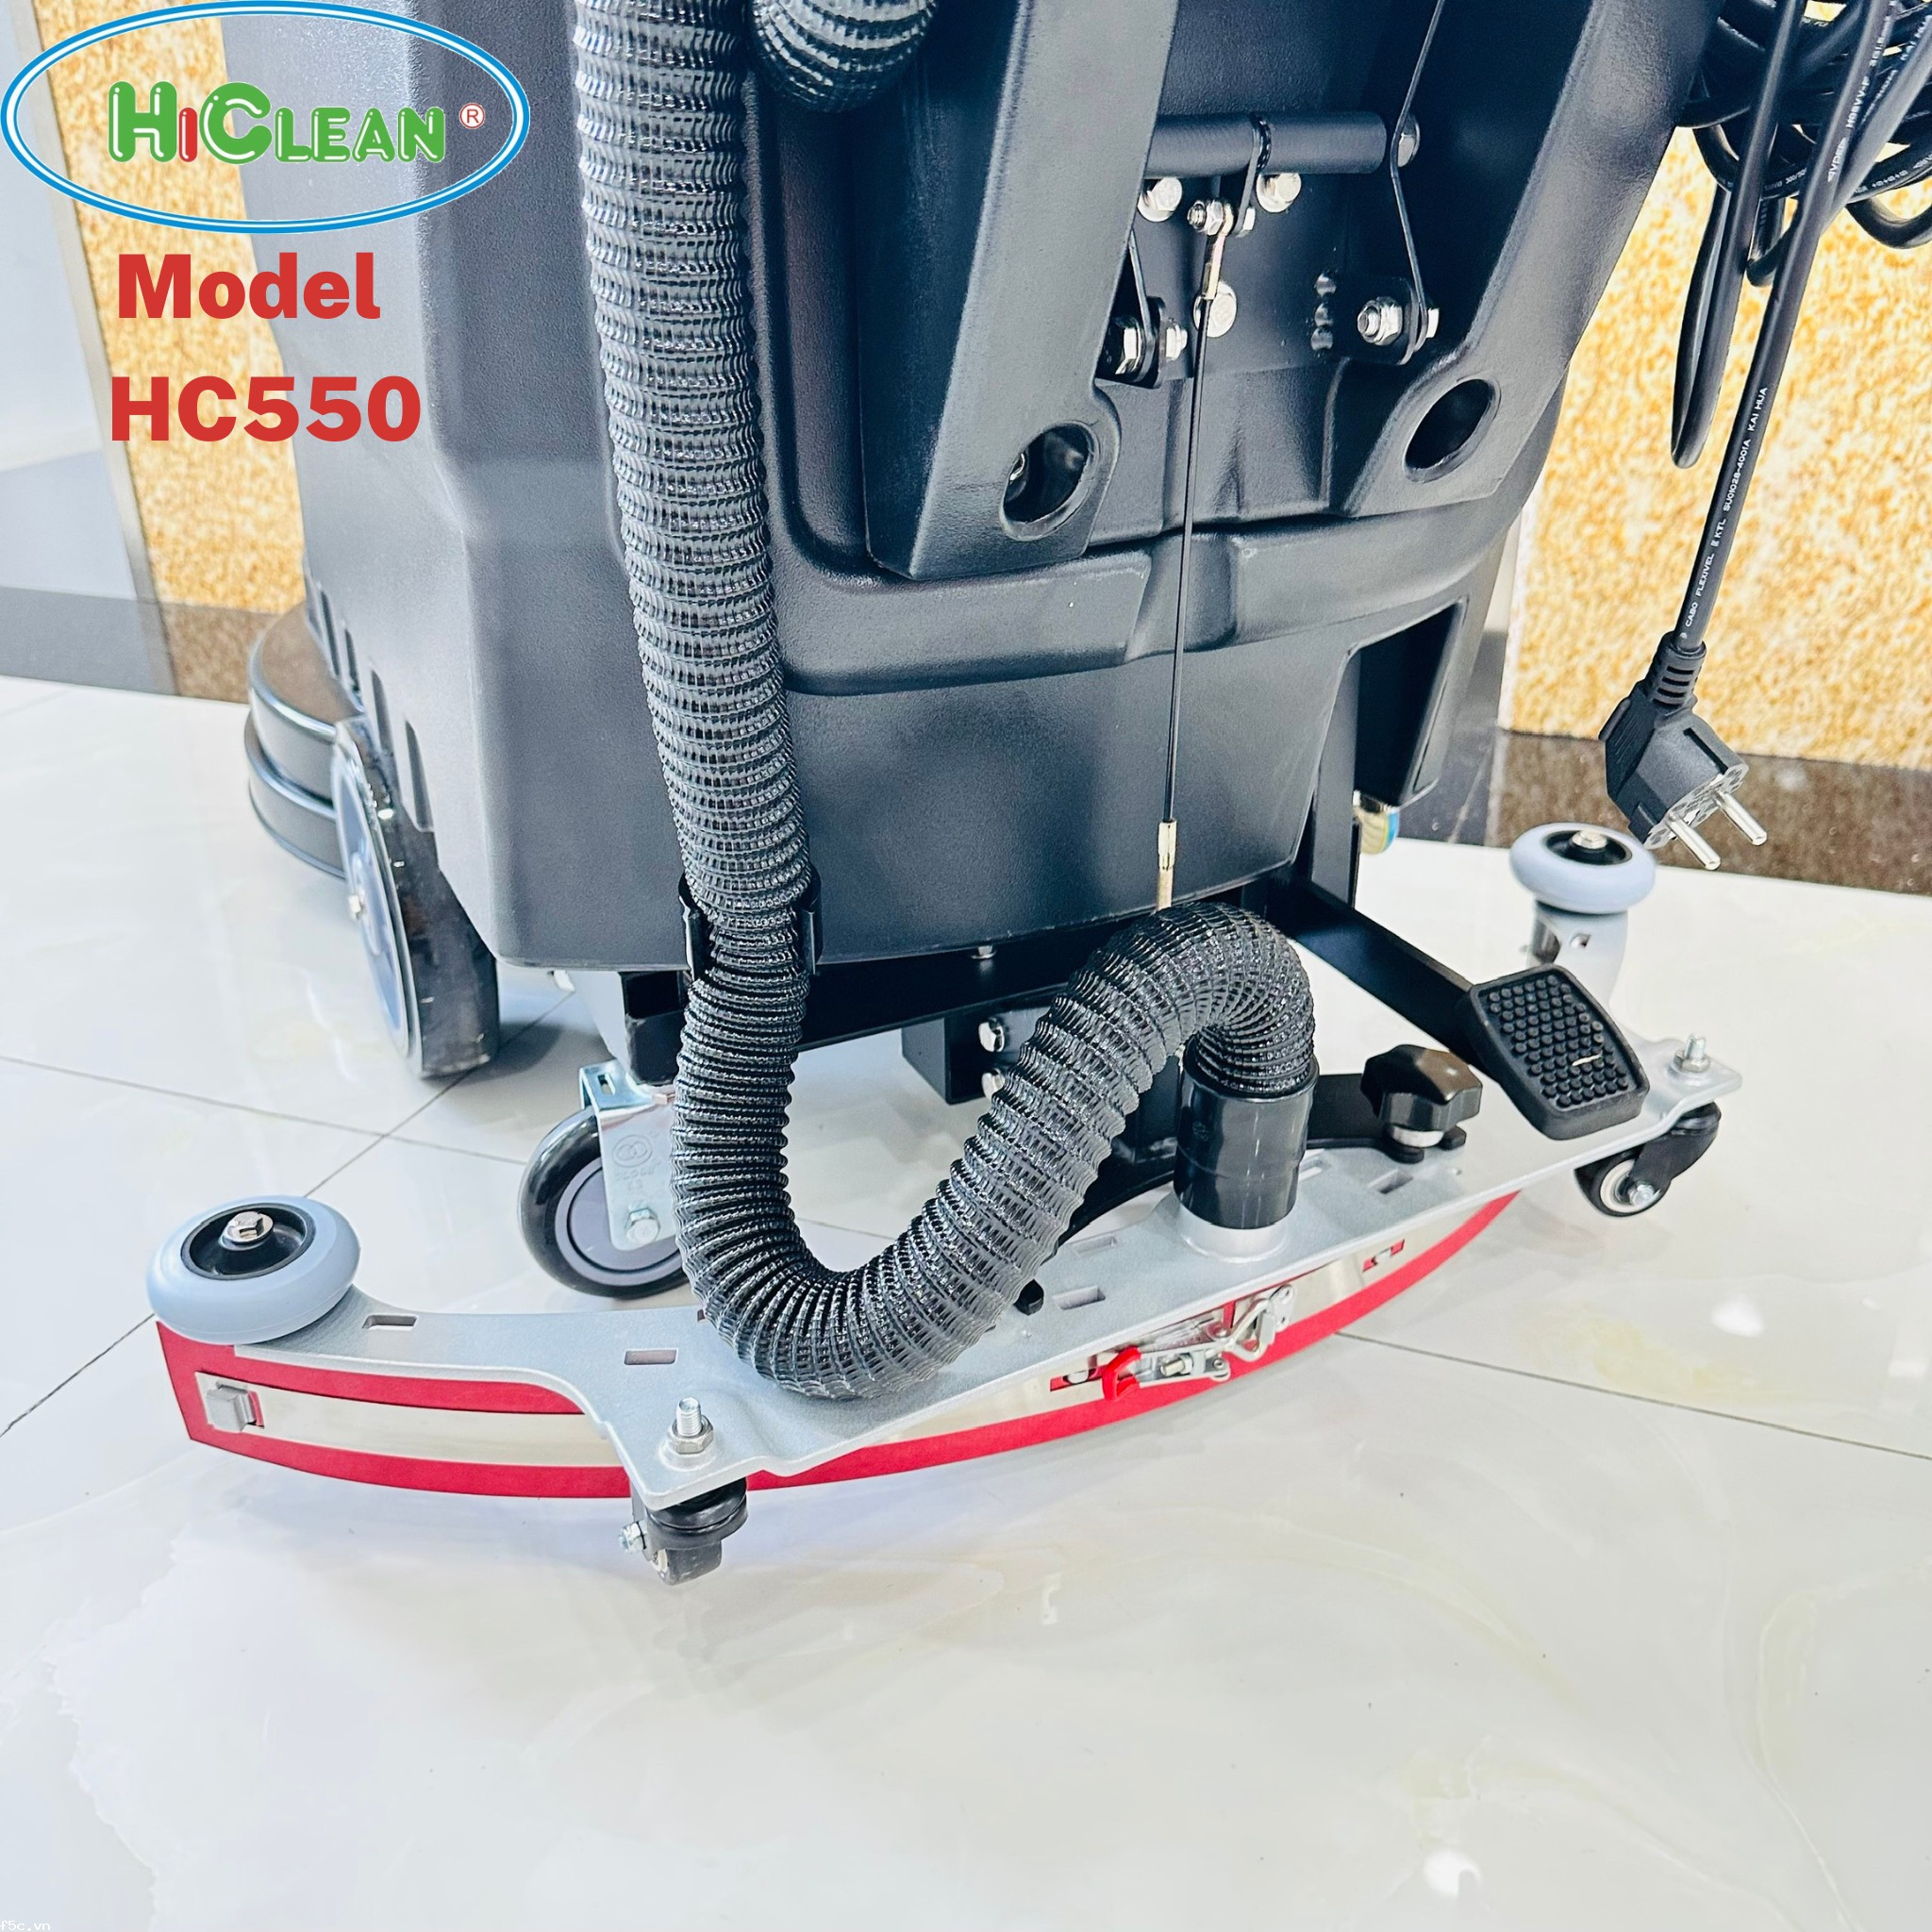 MÁY CHÀ SÀN LIÊN HỢP HICLEAN HC 550 New ( dùng điện )